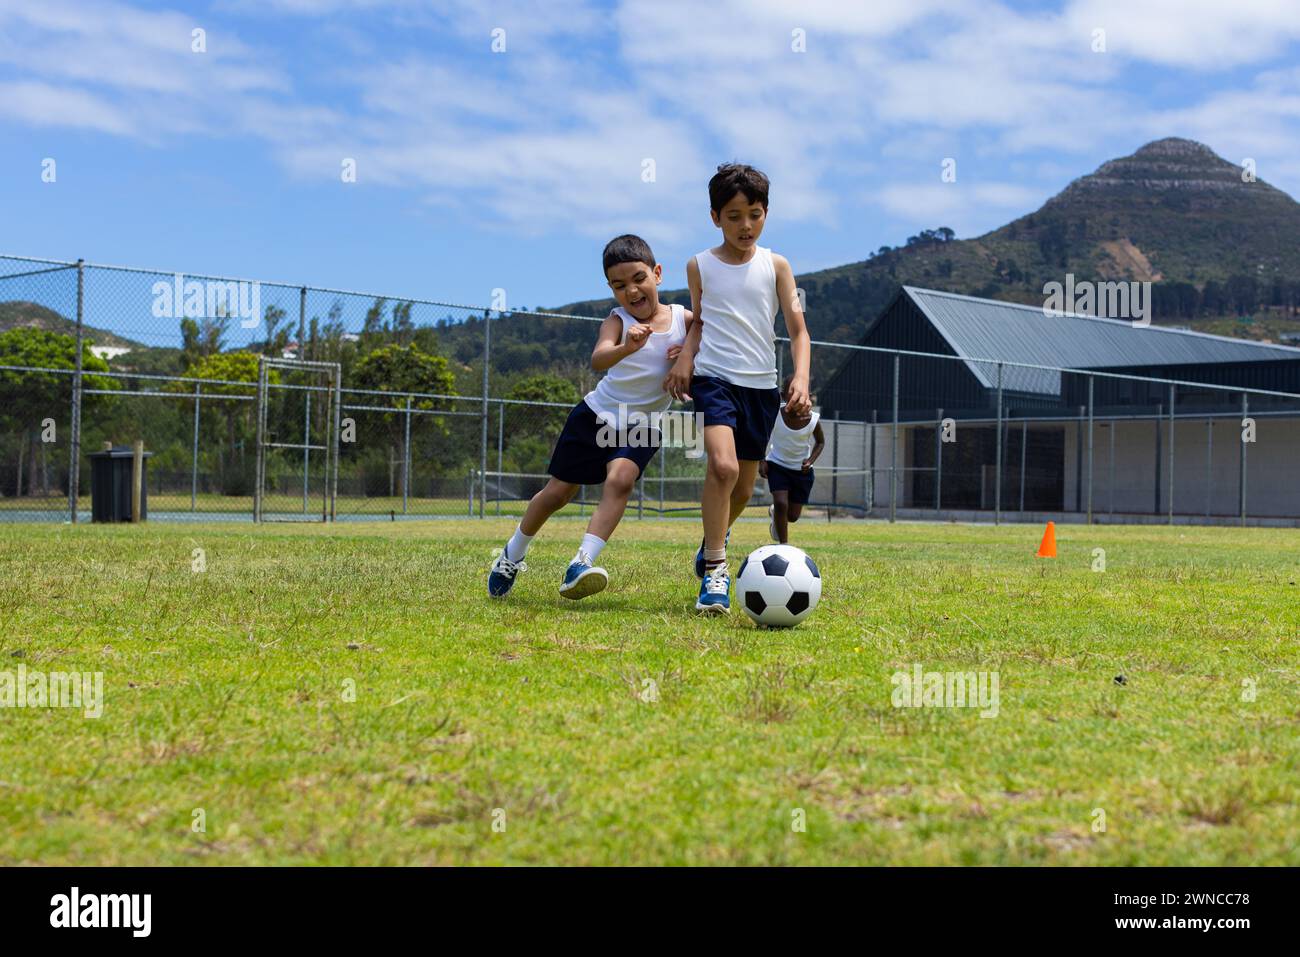 Deux garçons jouent au football par une journée ensoleillée à l'école, l'un poursuivant le ballon Banque D'Images